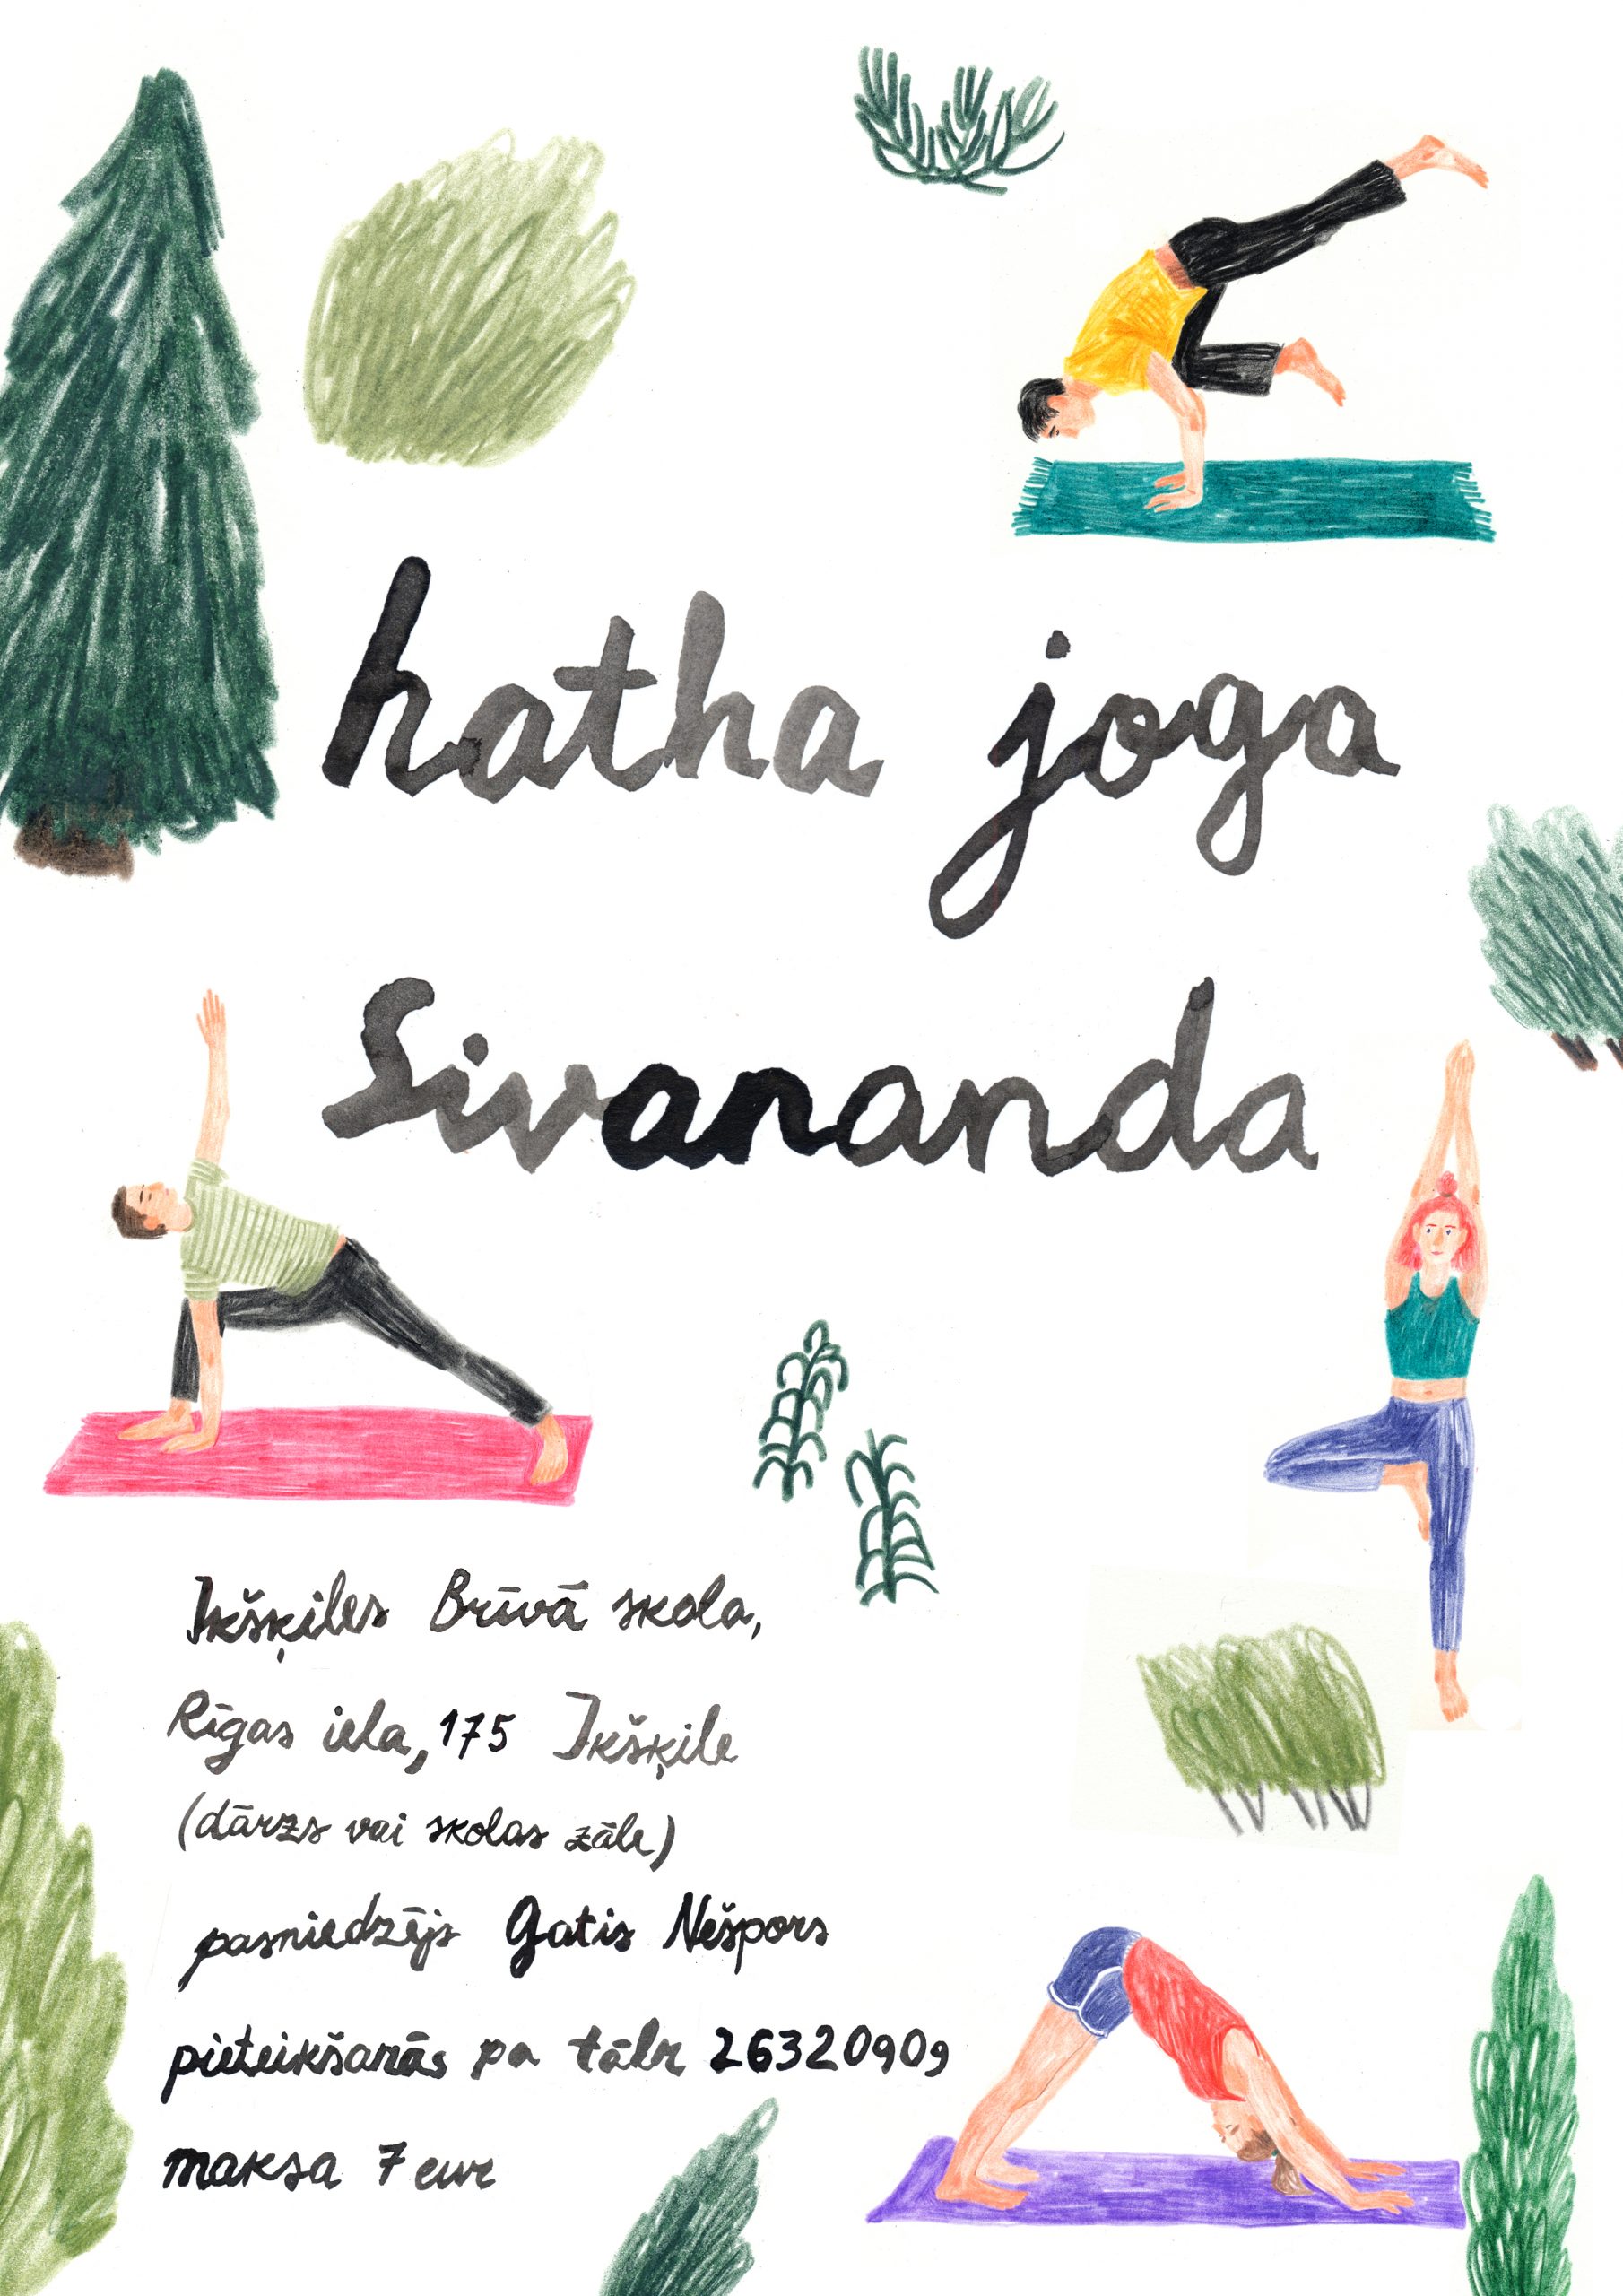 Hatha joga Sivananda nodarbības no augusta – Ikšķiles Brīvā skola